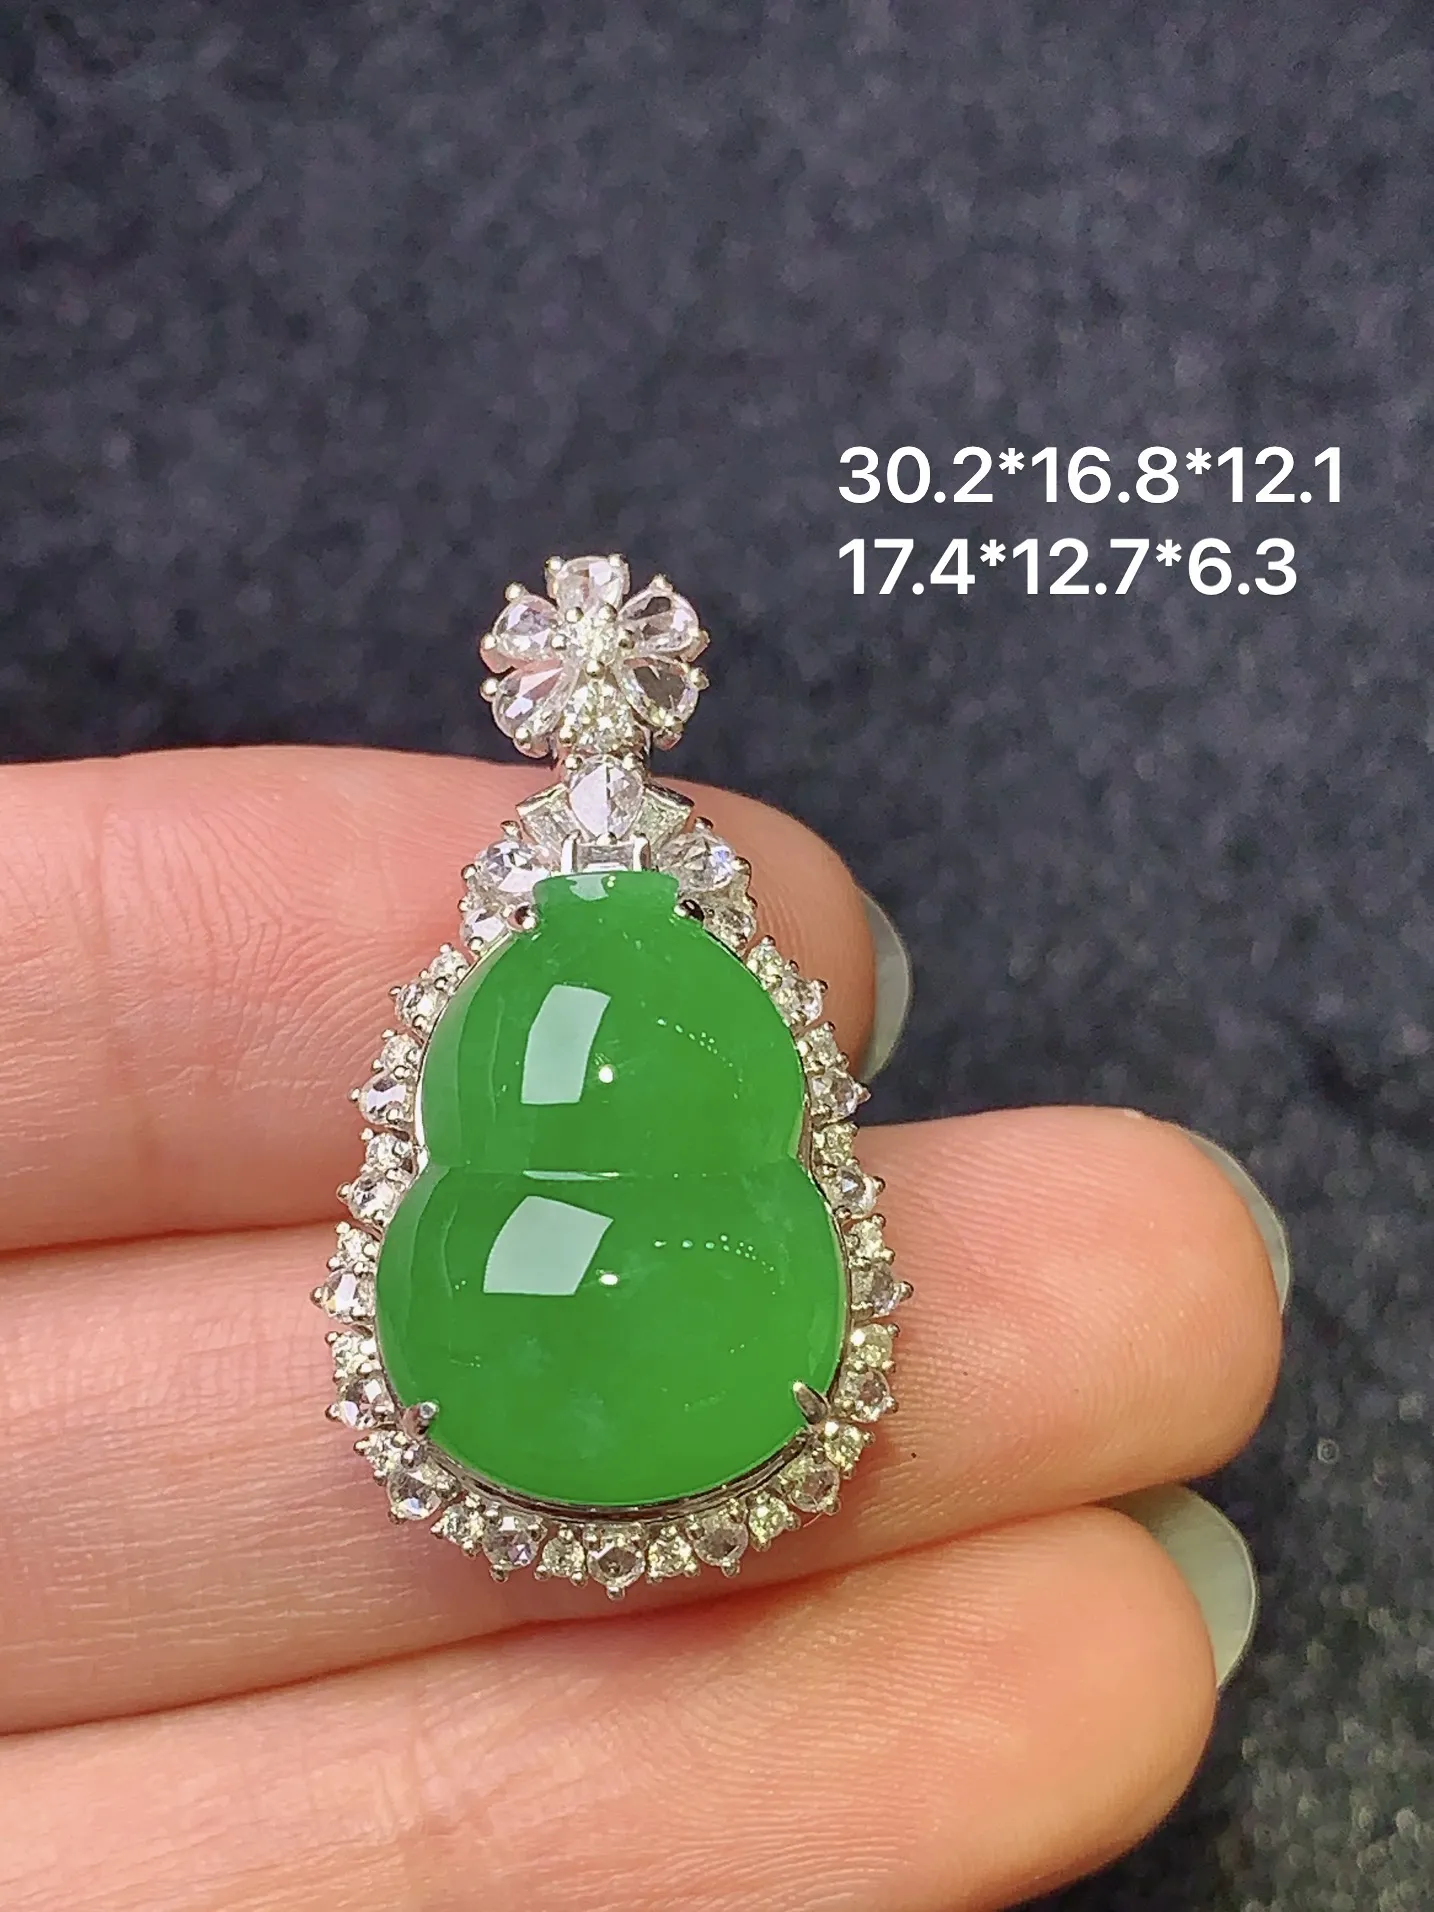 18k金钻镶嵌满绿葫芦吊坠 玉质细腻 色泽艳丽 整体尺寸30.2*16.8*12.1